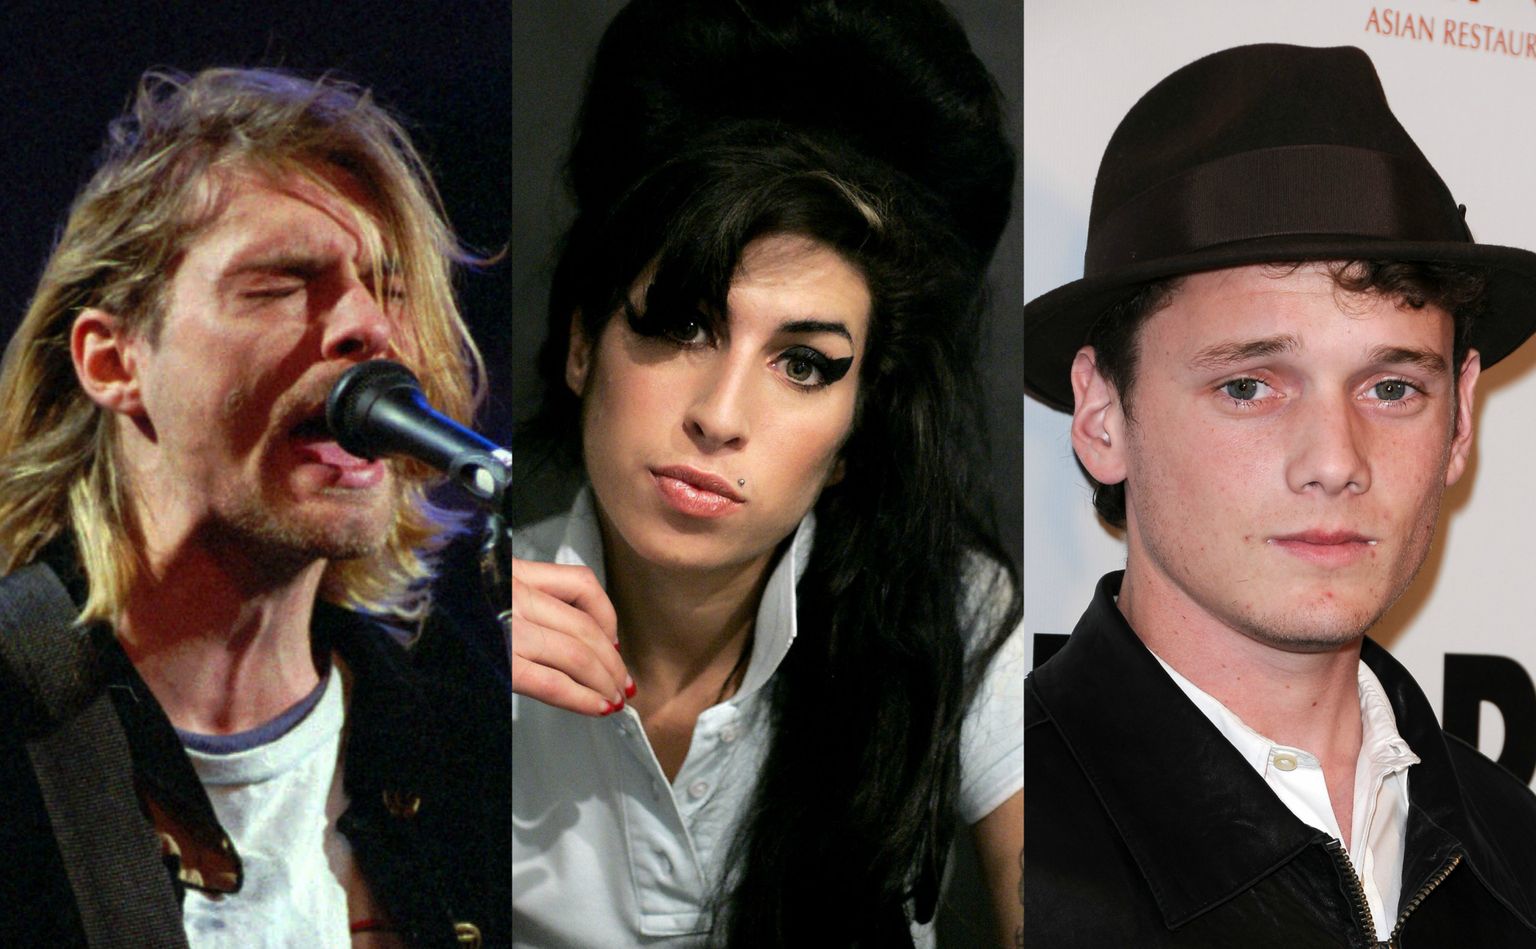 Fotol: Kurt Cobain, Amy Winehouse, Anton Yelchin. Fotod: Scanpix.